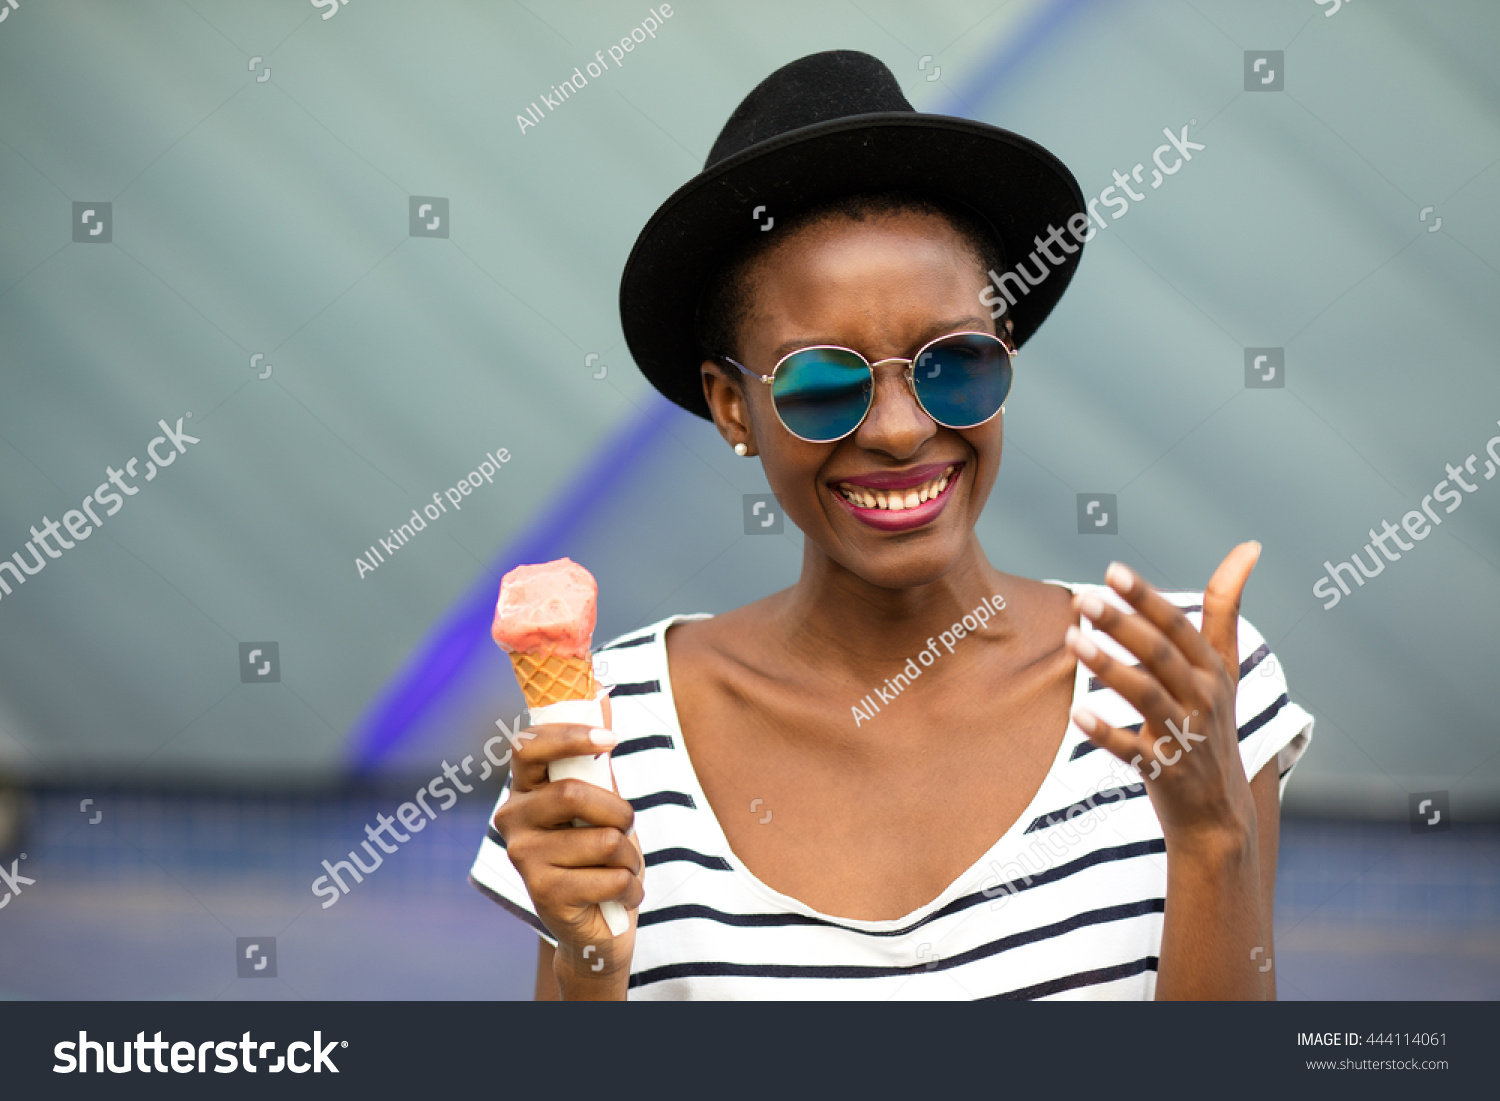 568 African icecream Images, Stock Photos & Vectors | Shutterstock